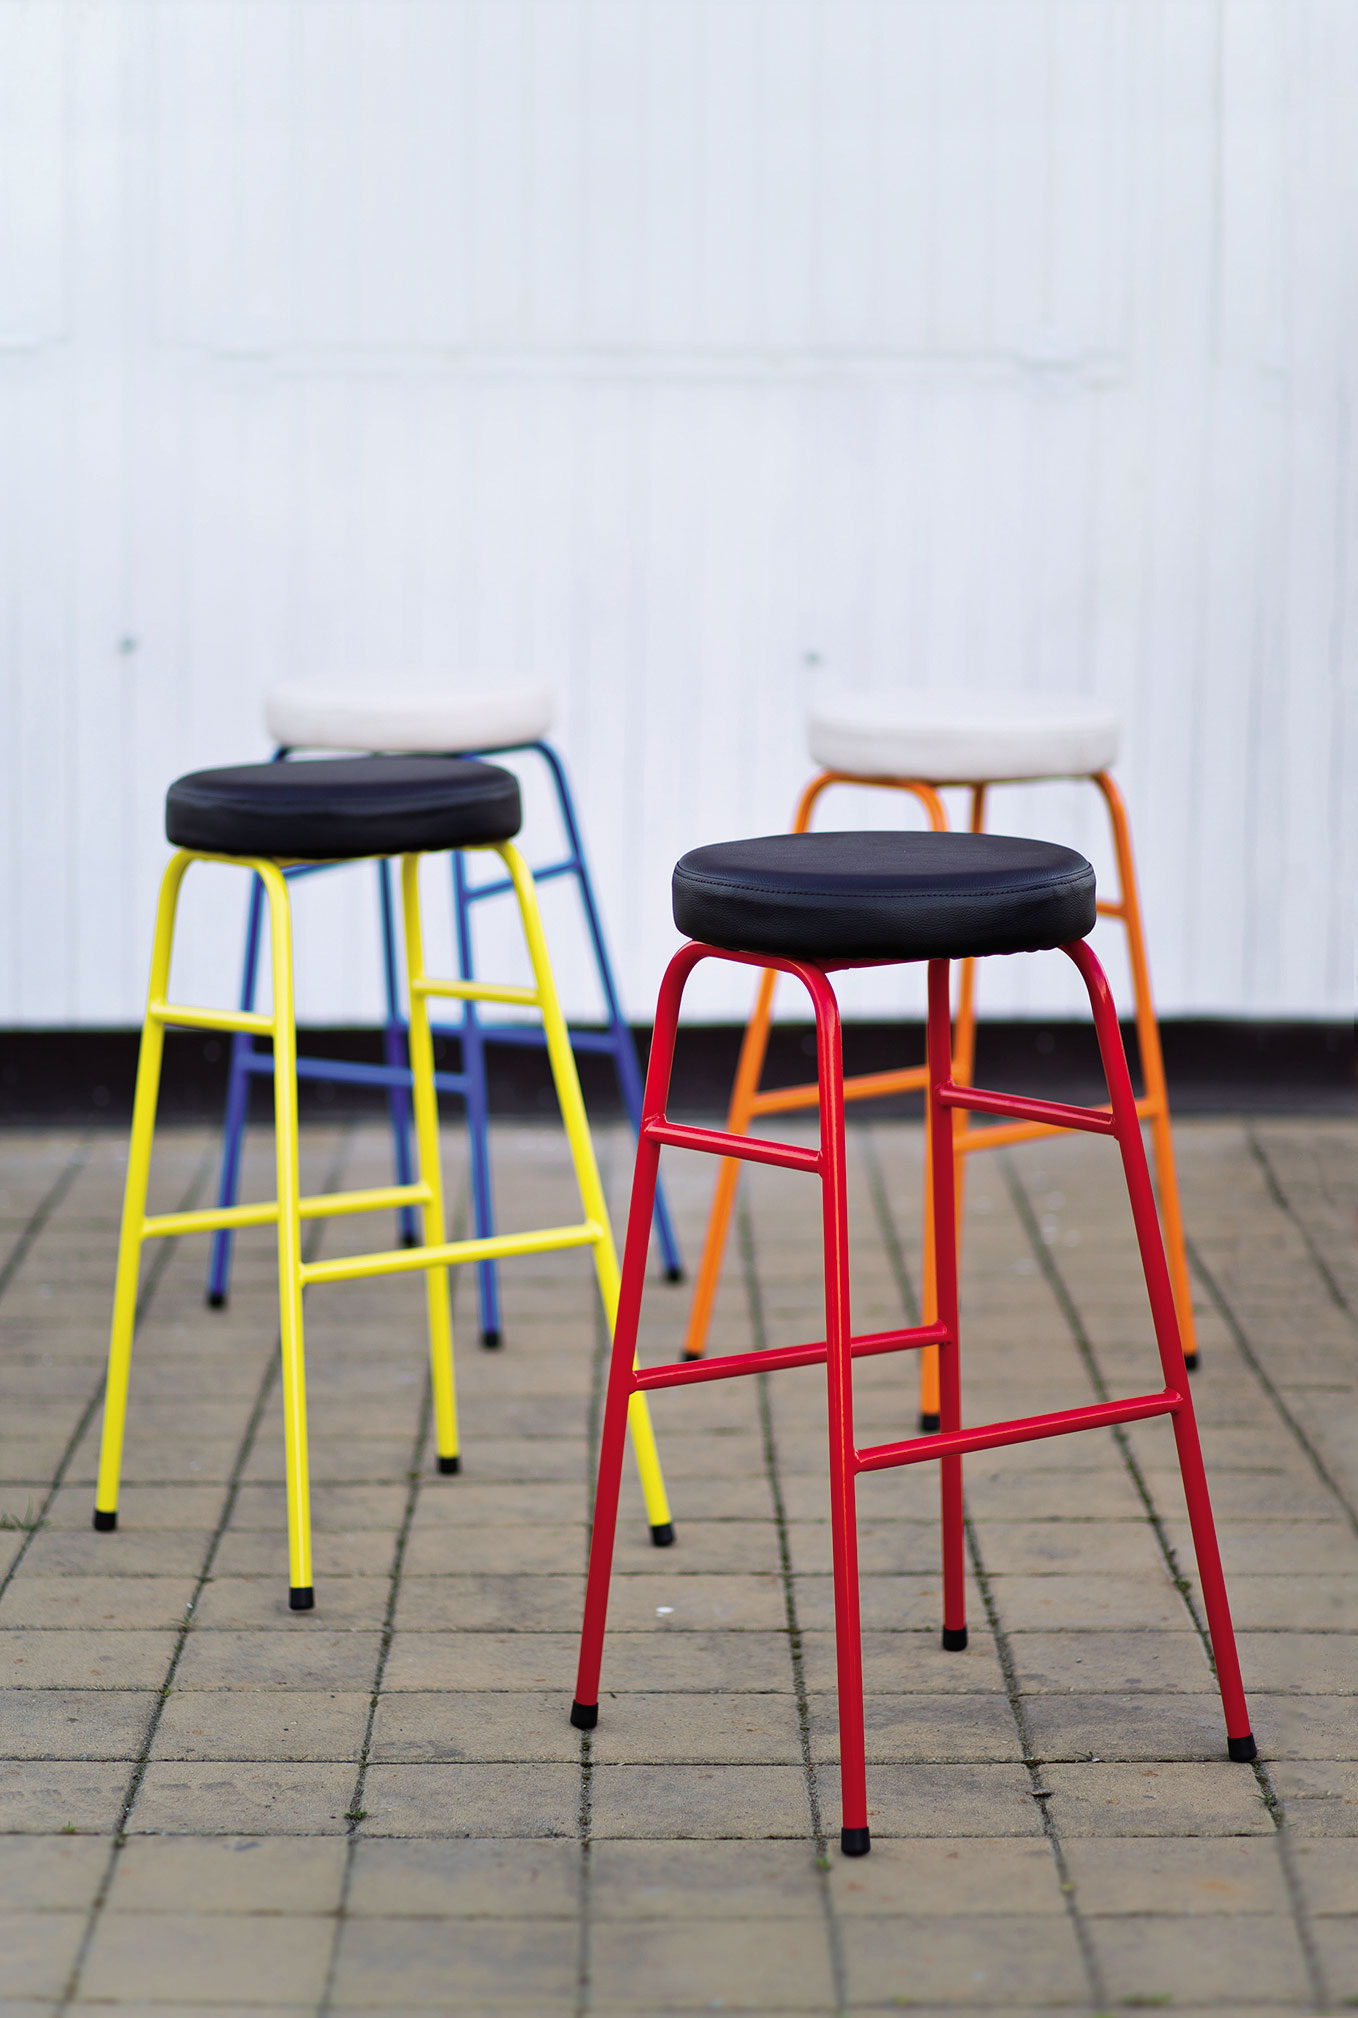 Dizajn barových stoličiek s názvom Stará škola, 2014; dizajn: Michal Staško, výrobca: K-Ten Turzovka, s. r. o.